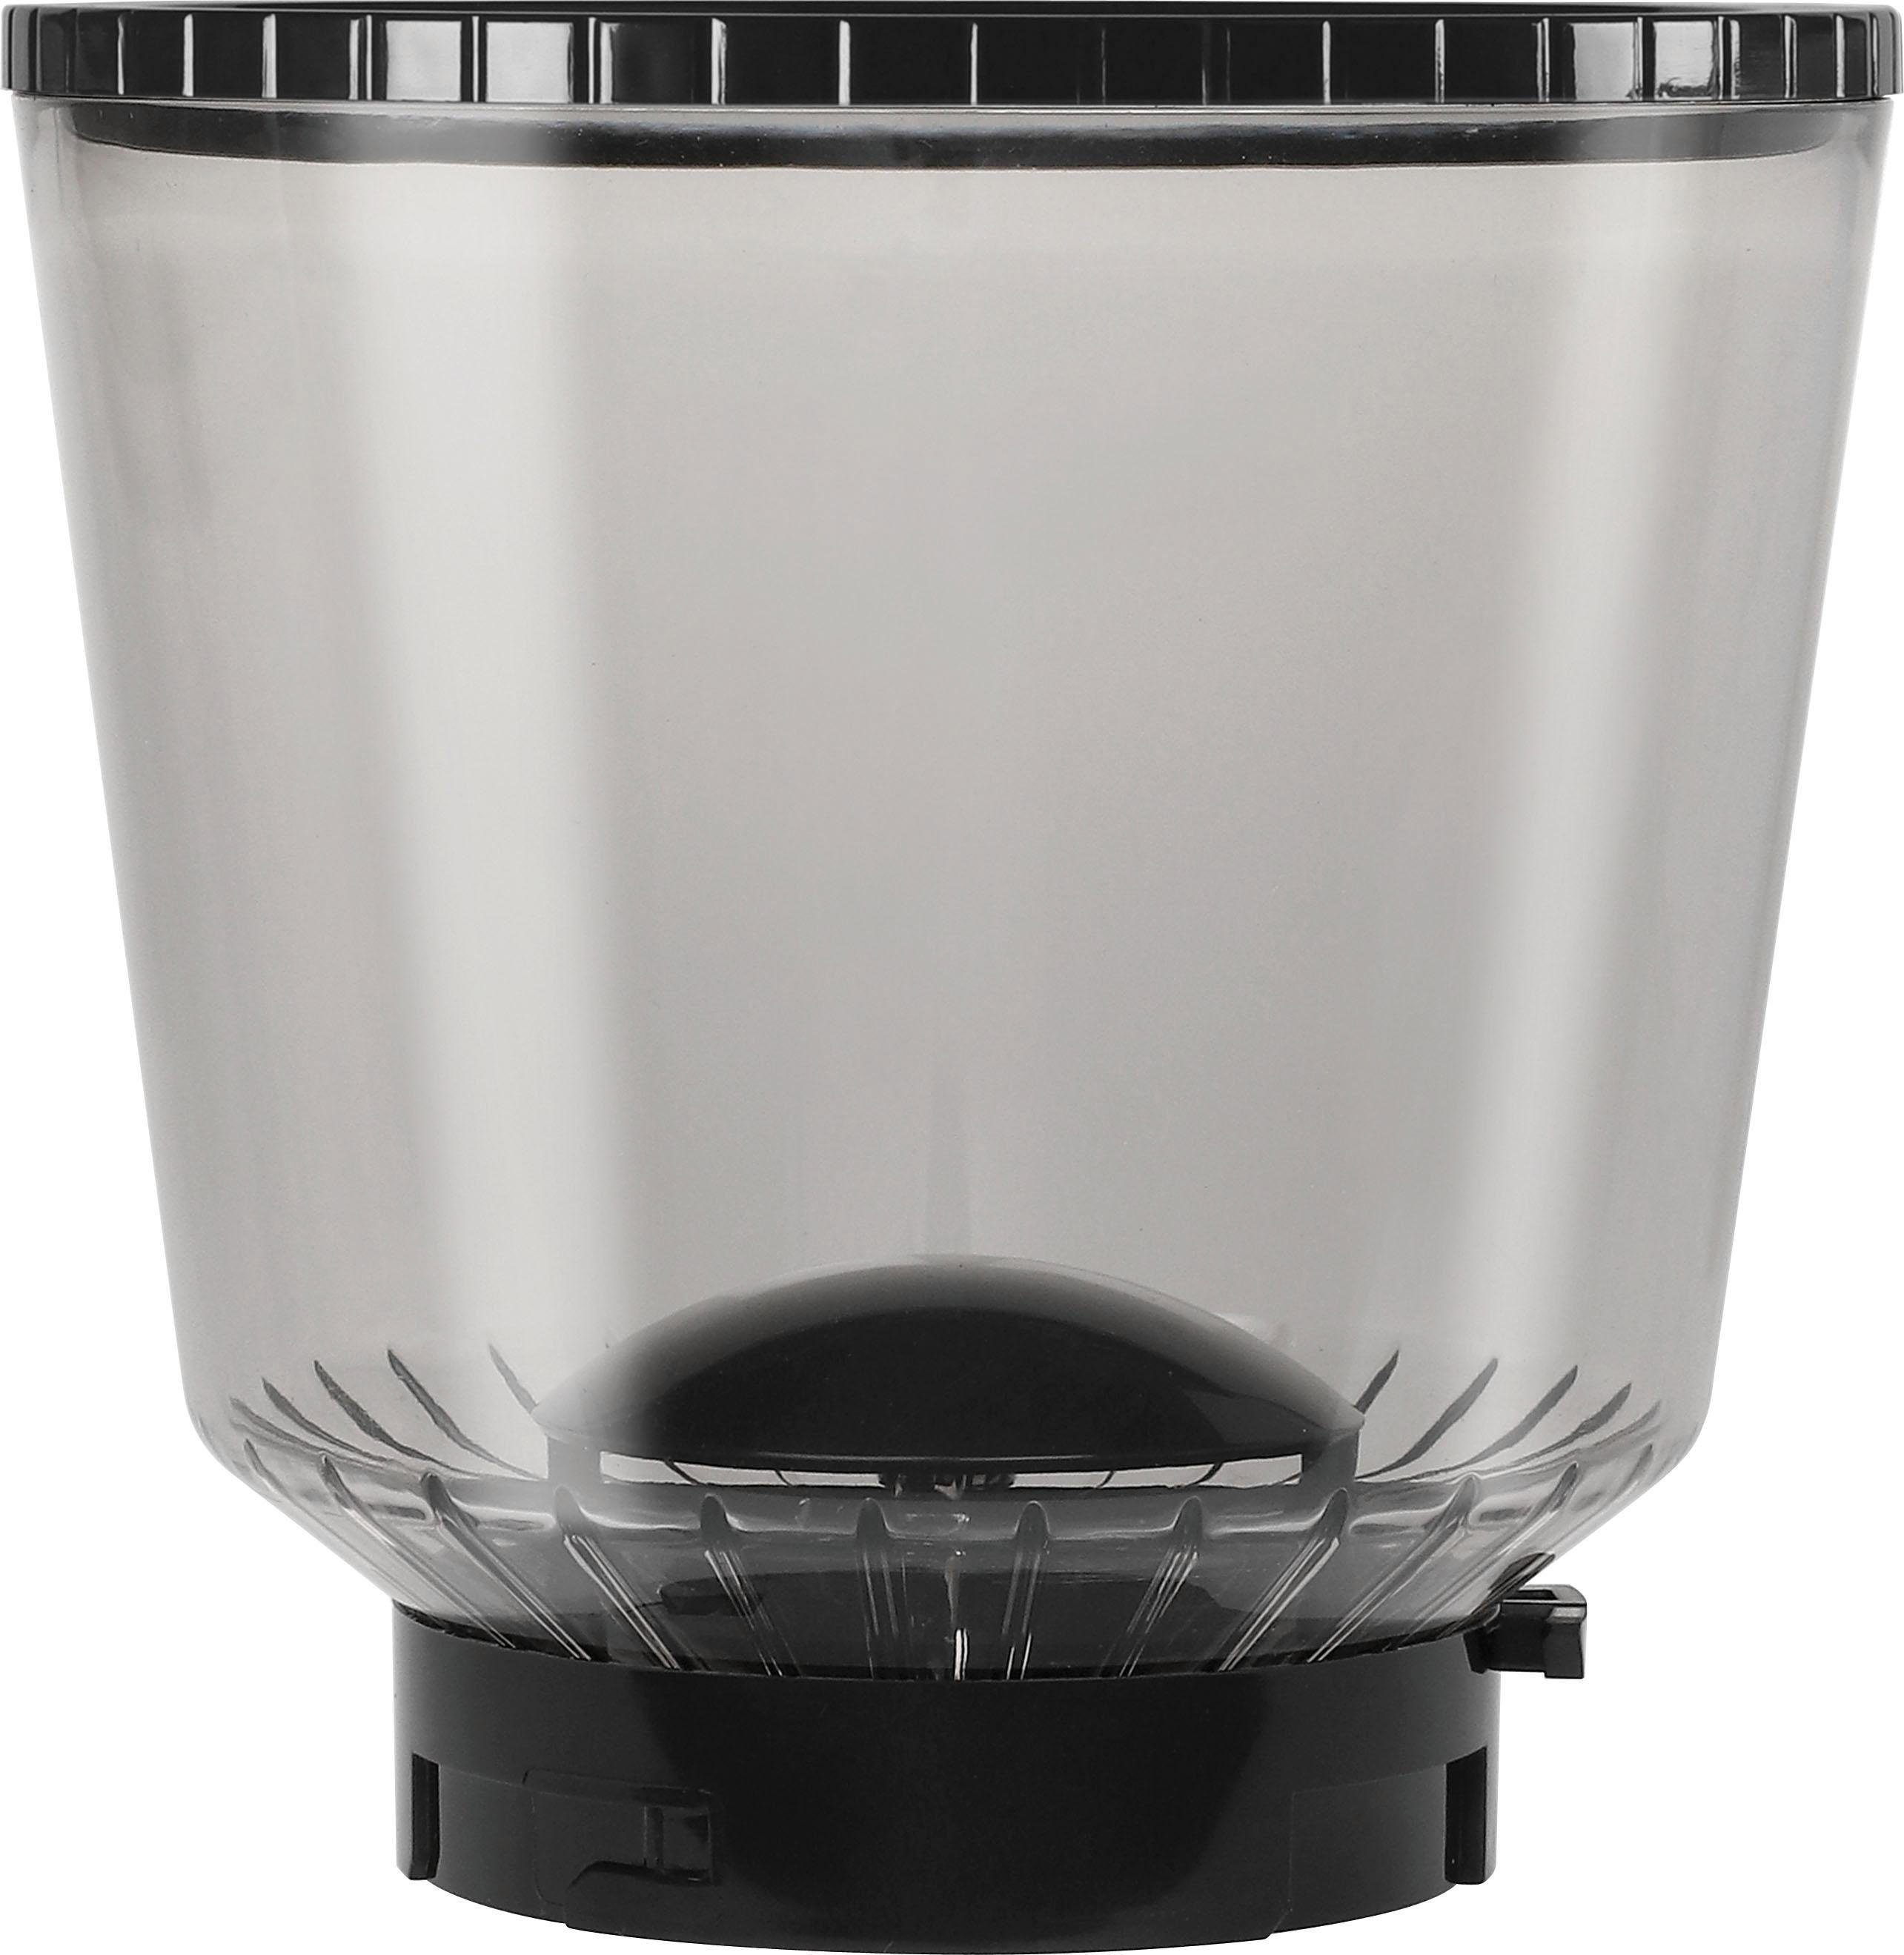 Melitta Kaffeemühle Calibra Bohnenbehälter g Kegelmahlwerk, 375 schwarz-Edelstahl, 160 1027-01 W